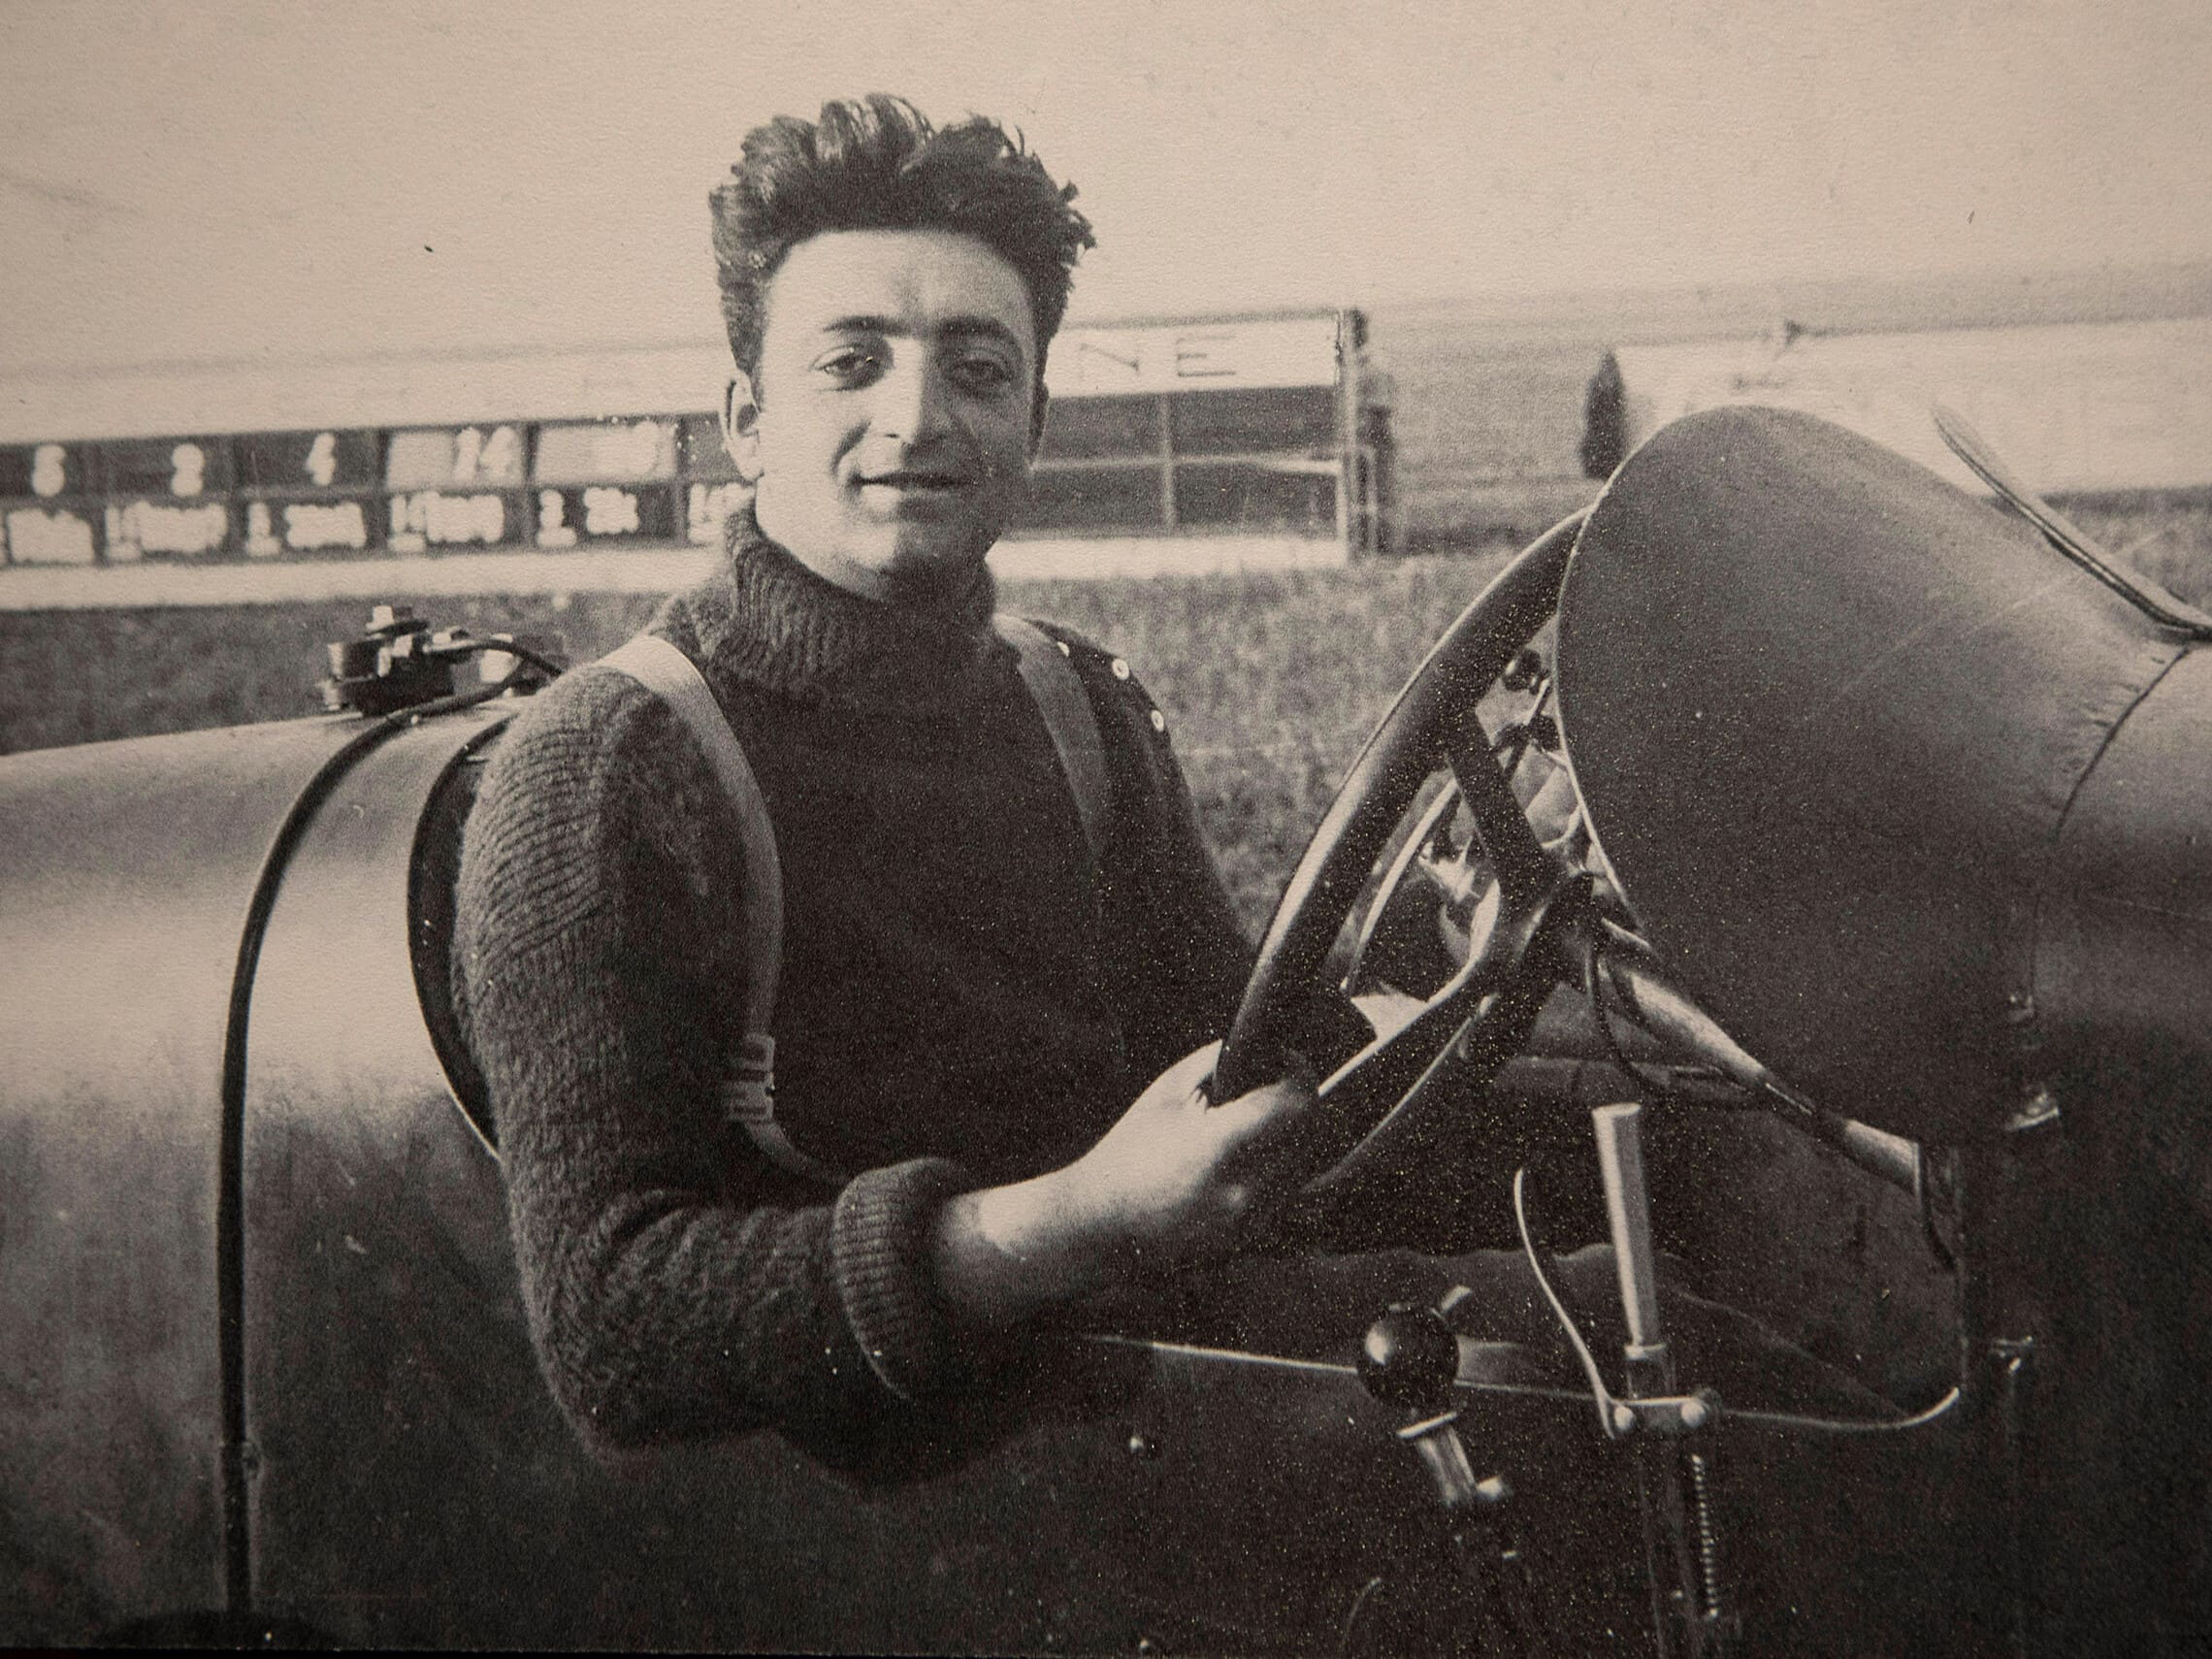 אנצו פרארי בתחילת הקריירה שלו כנהג מרוצים של אלפא-רומאו, 1922 (צילום: ilpo musto / Alamy)